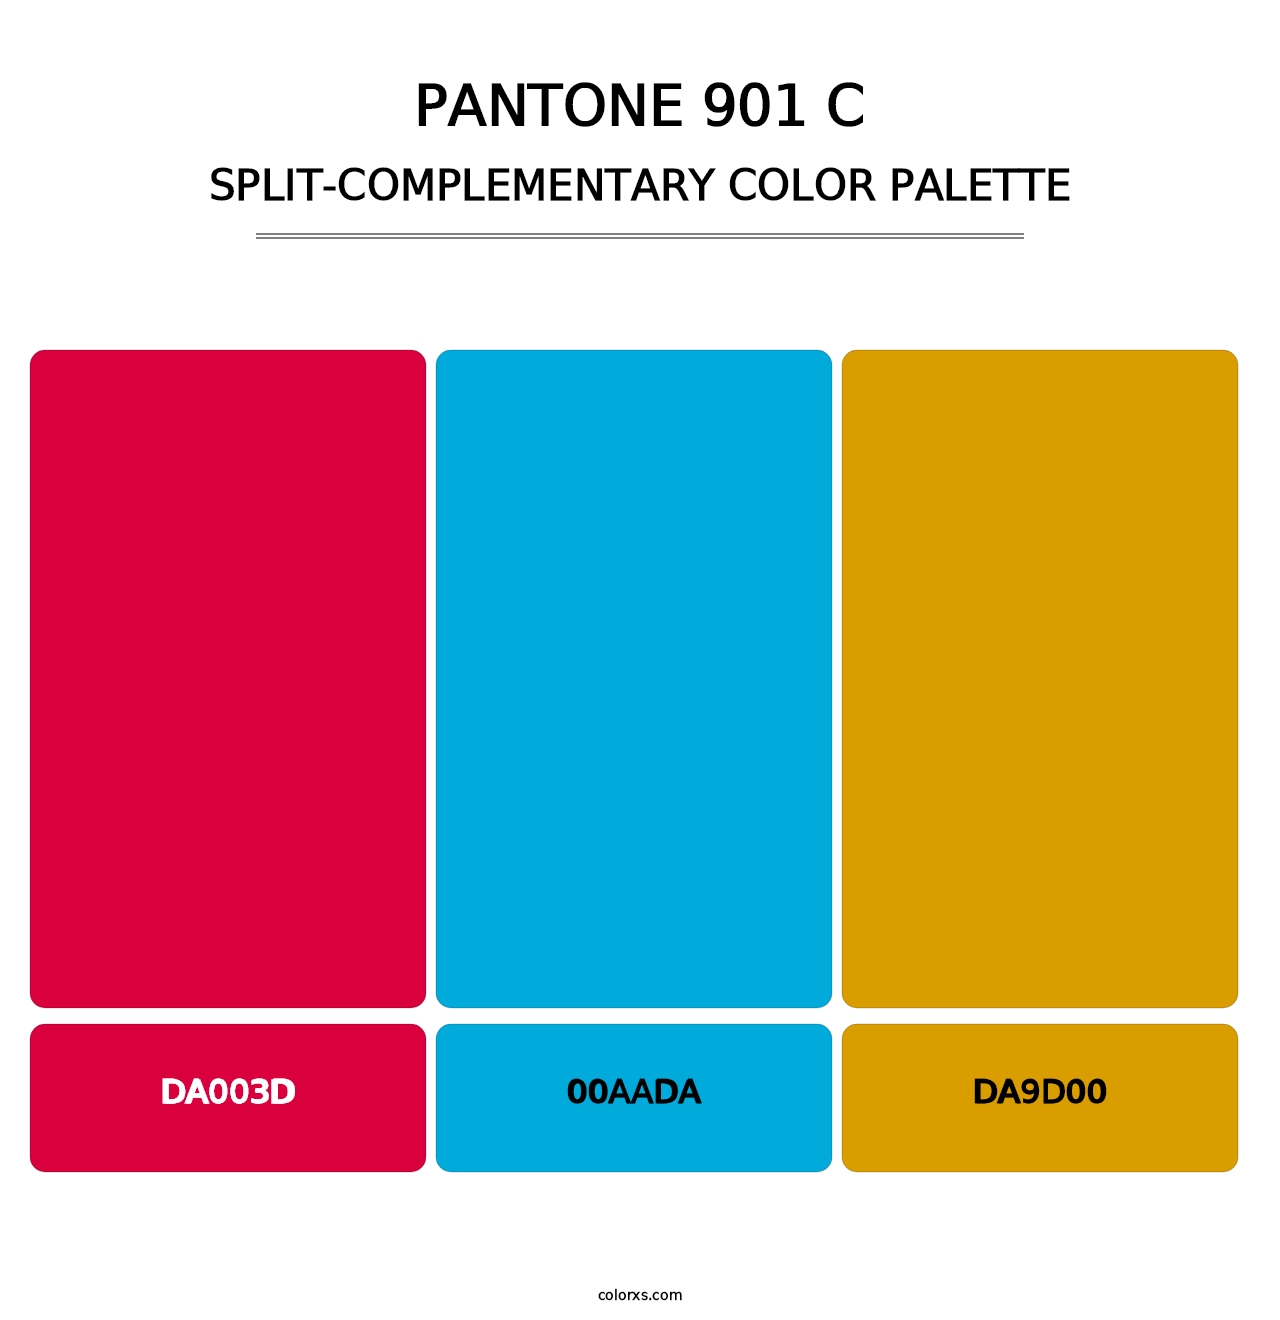 PANTONE 901 C - Split-Complementary Color Palette